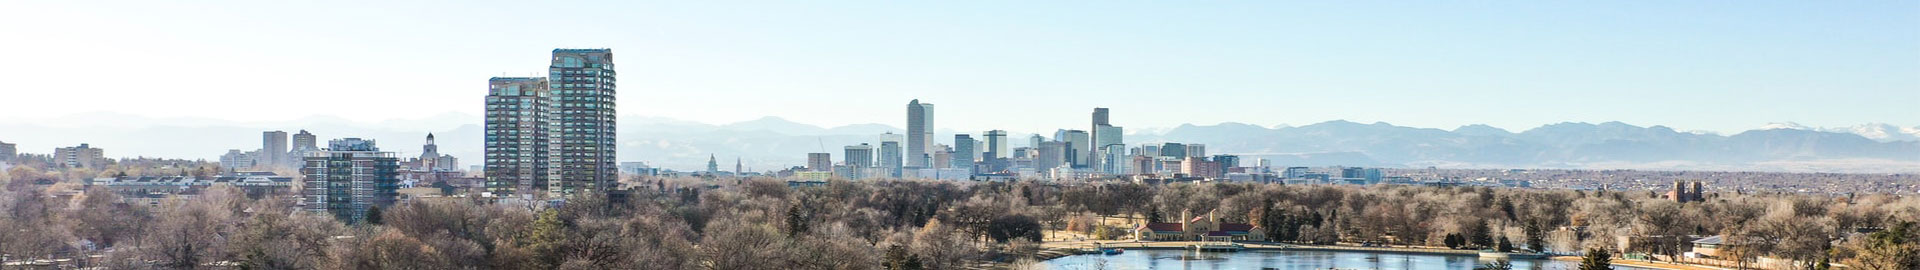 horizon view of Denver Colorado park